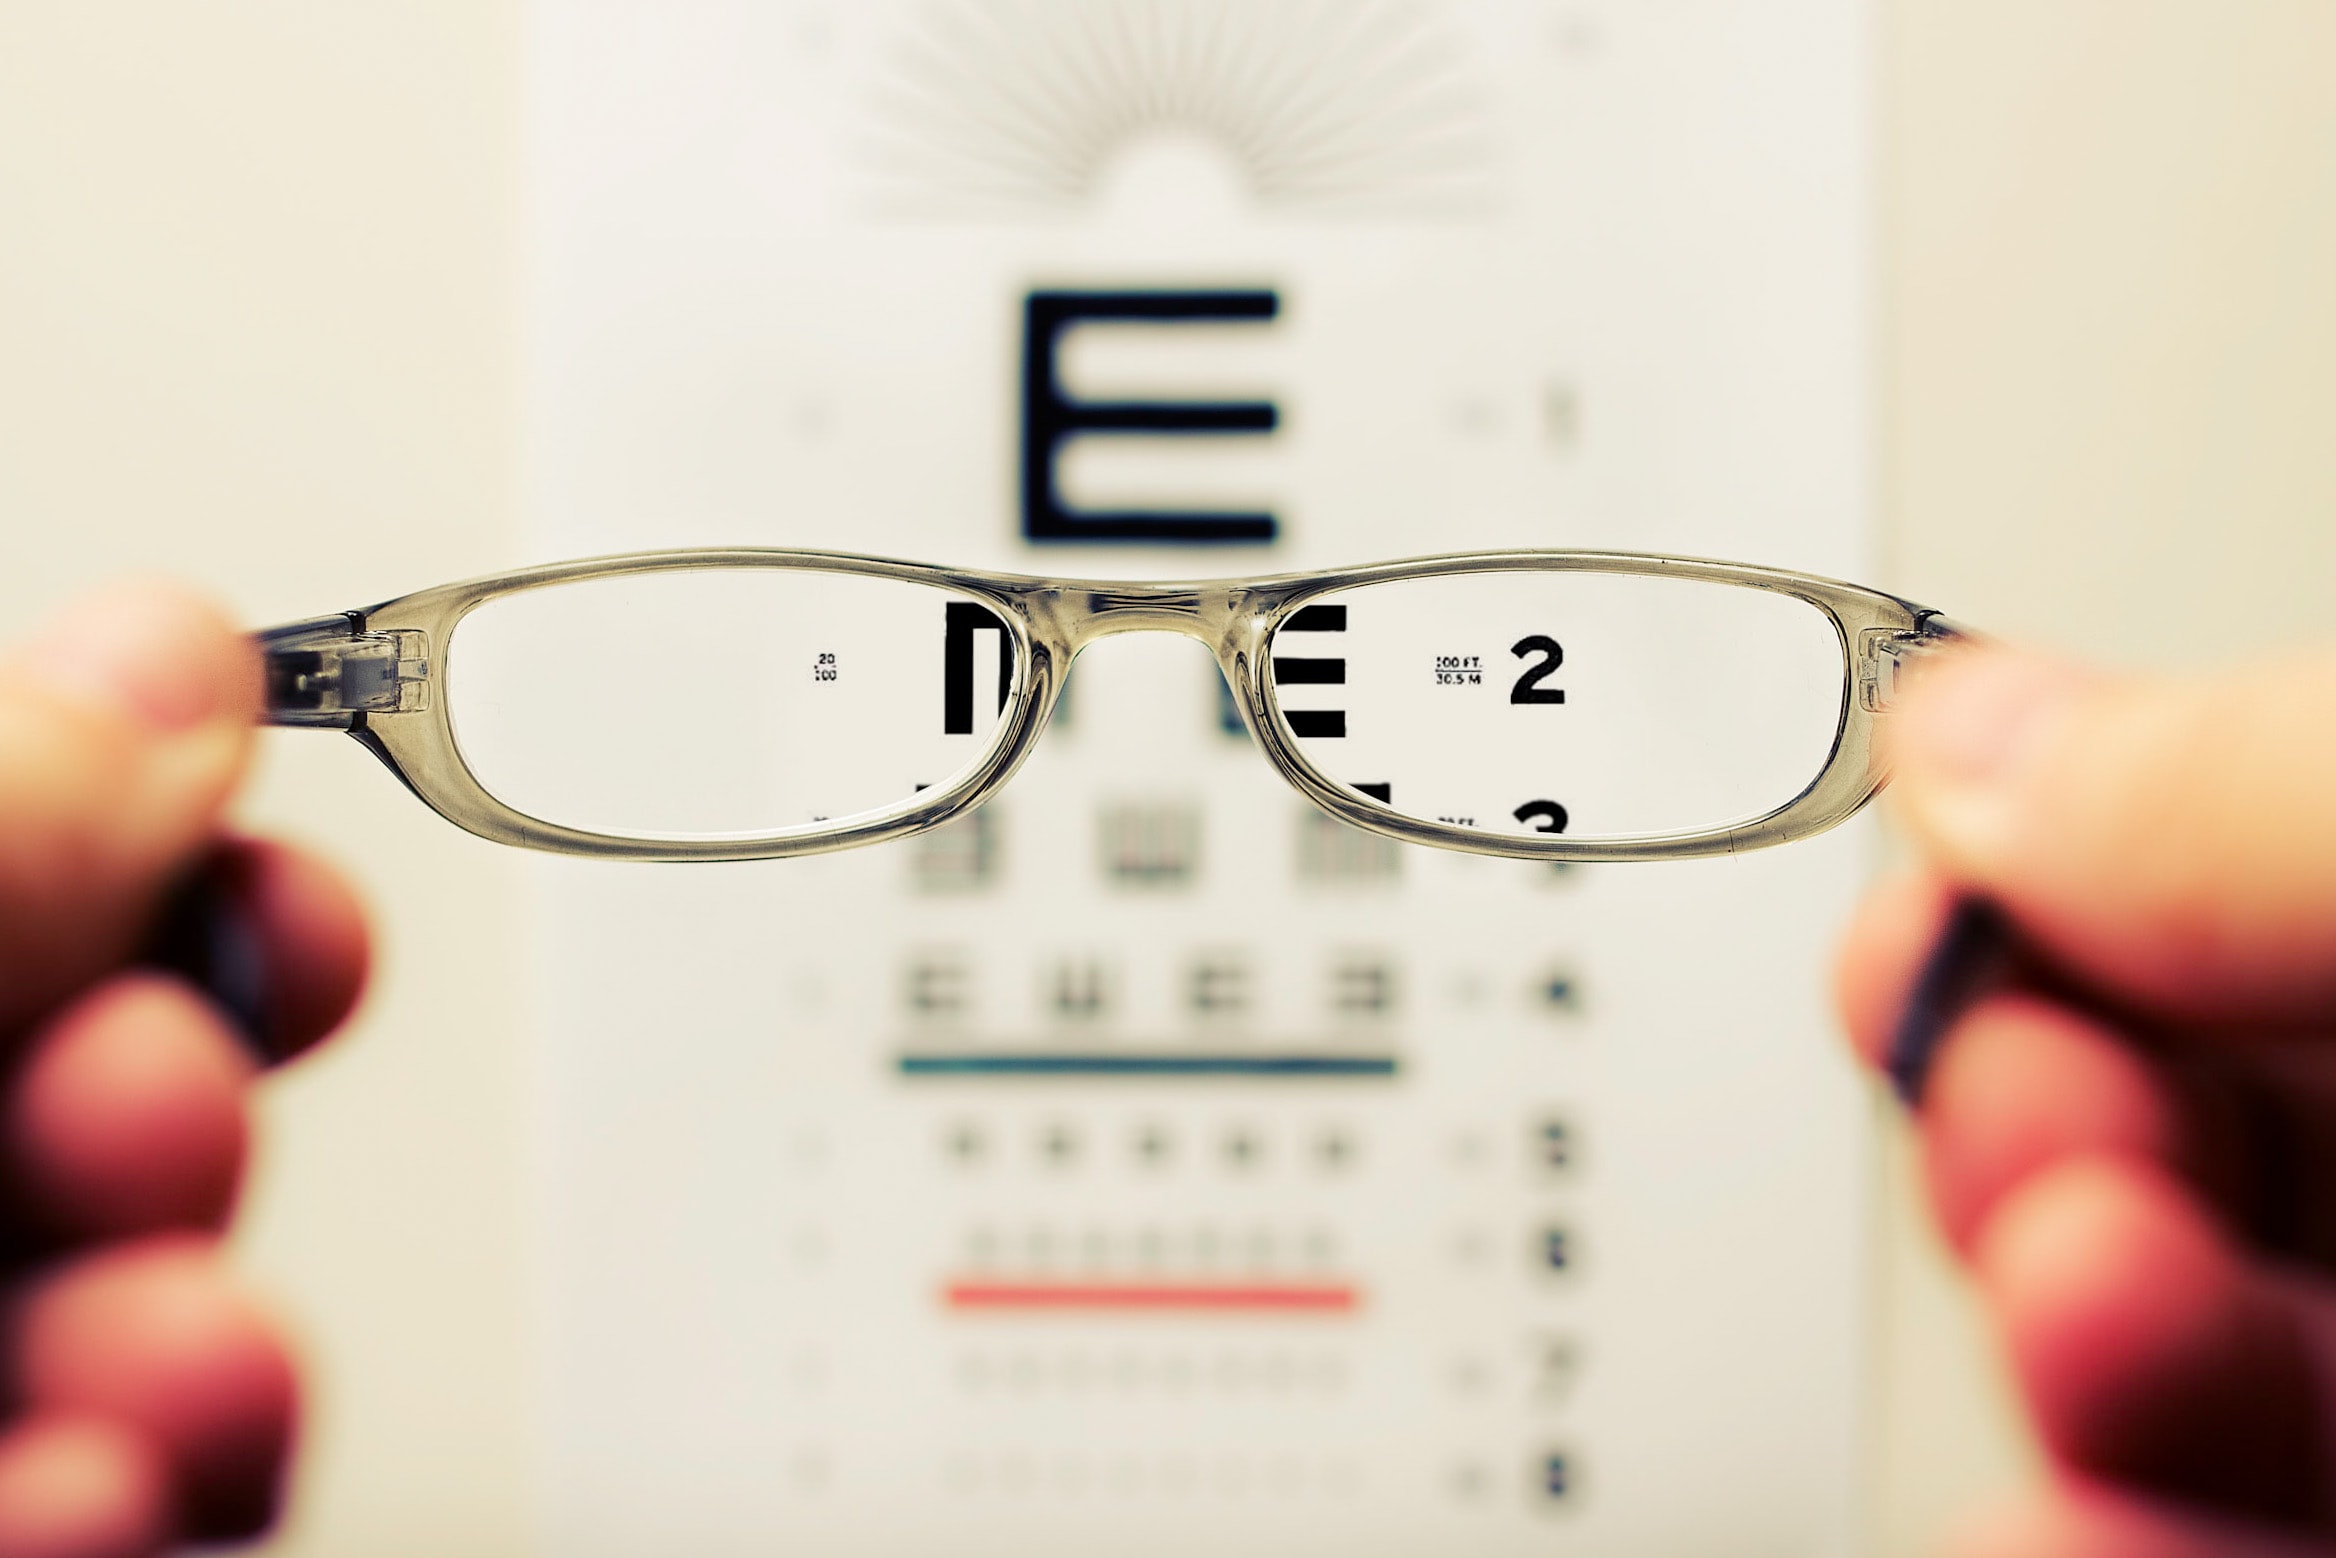 Visión borrosa, retinopatía diabética o edema macular diabético ¿cómo distinguirlos?